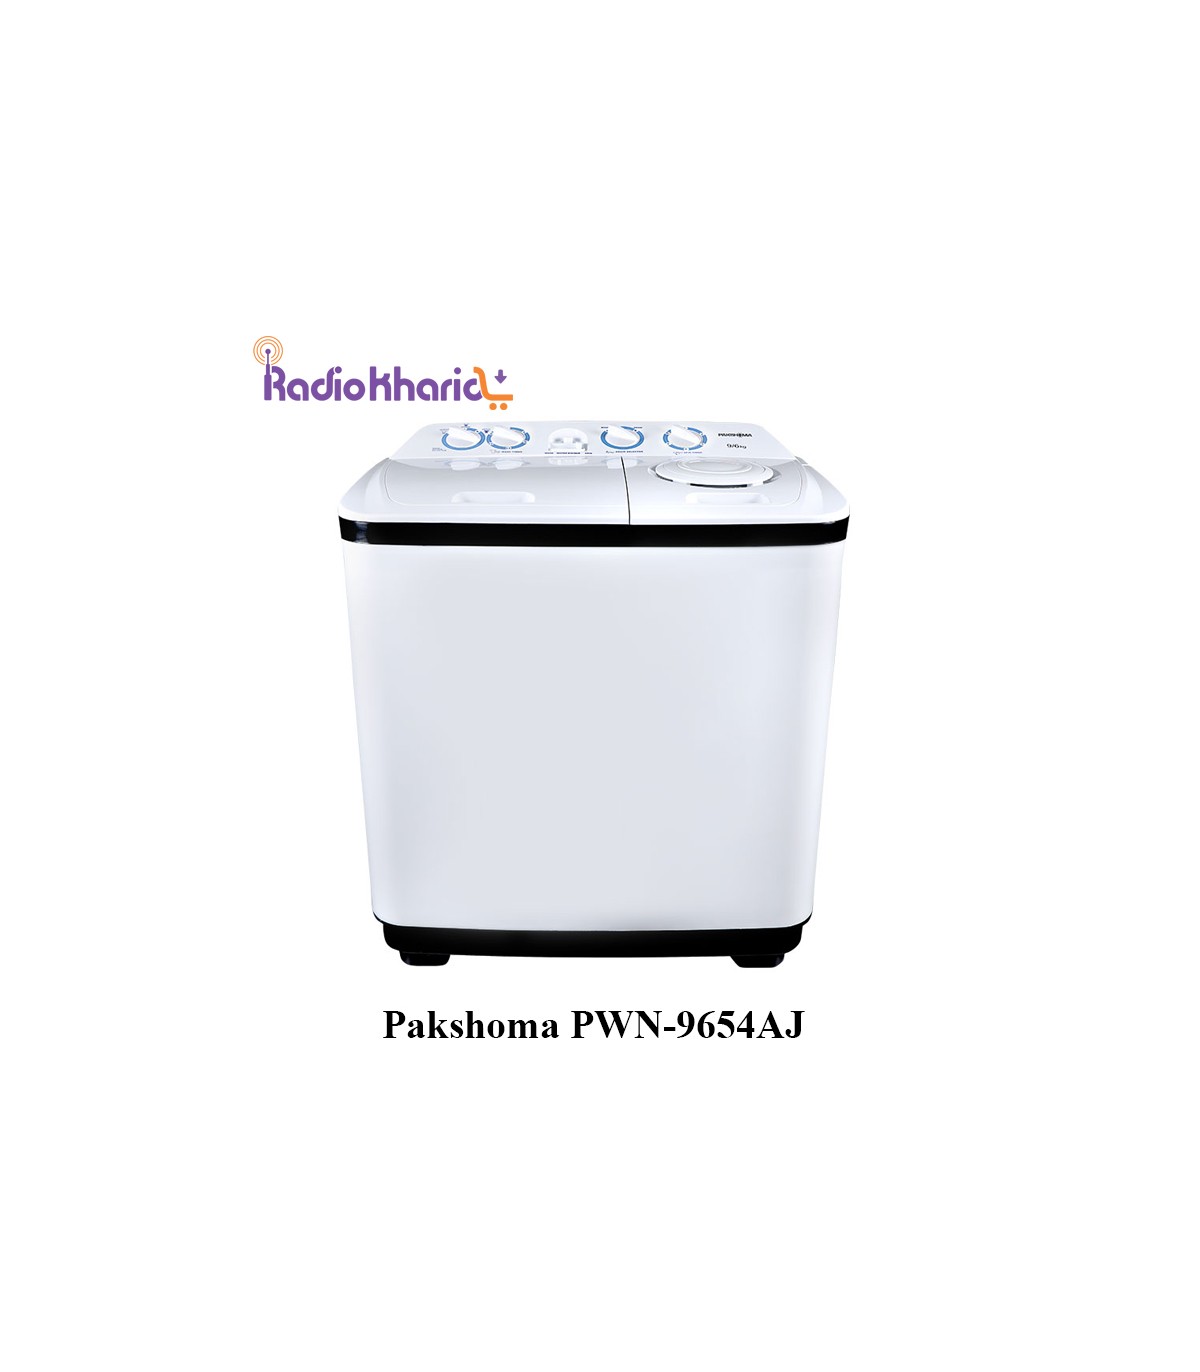 قیمت ماشین لباسشویی پاکشوما PWN-9654AJ|دوقلو پاکشوما9.6کیلویی